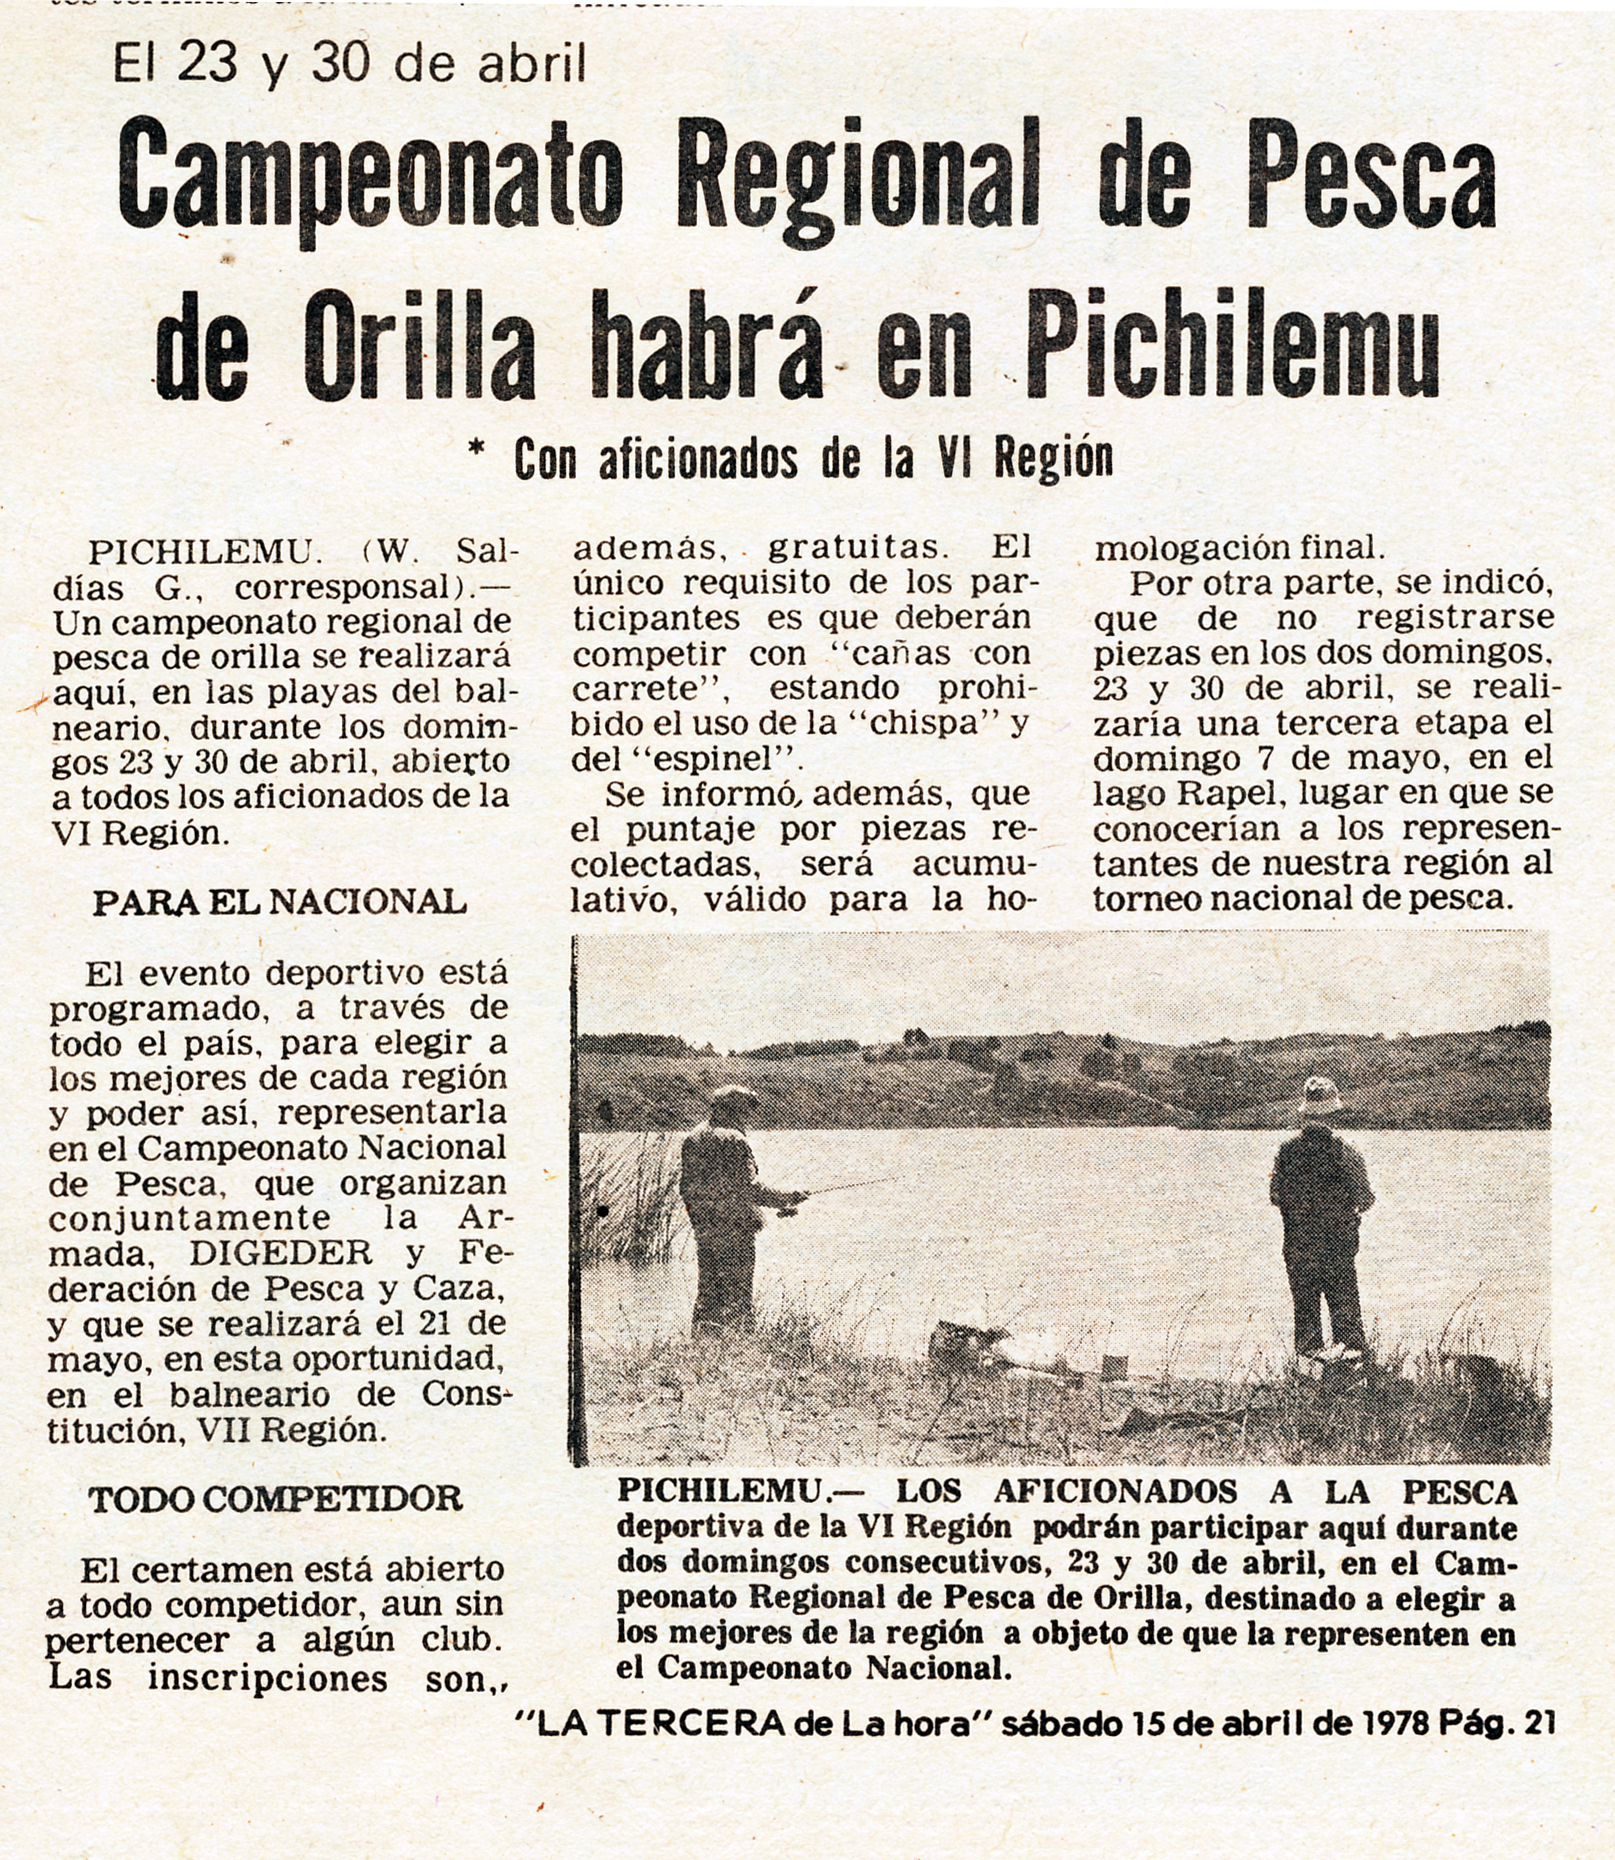 Campeonato Regional de Pesca de Orilla habrá en Pichilemu